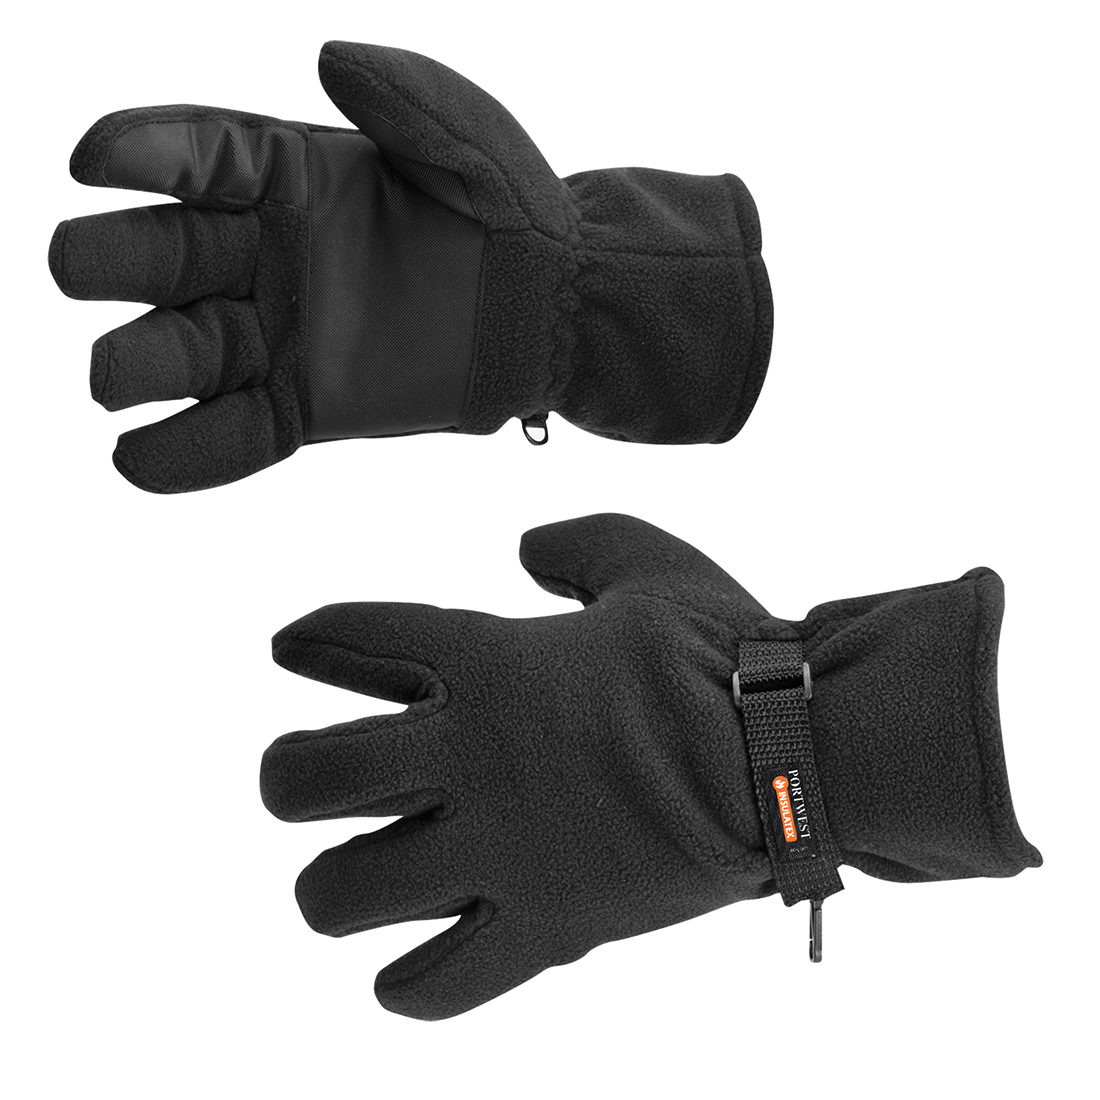 Fleece Glove Insulatex Lined GL12